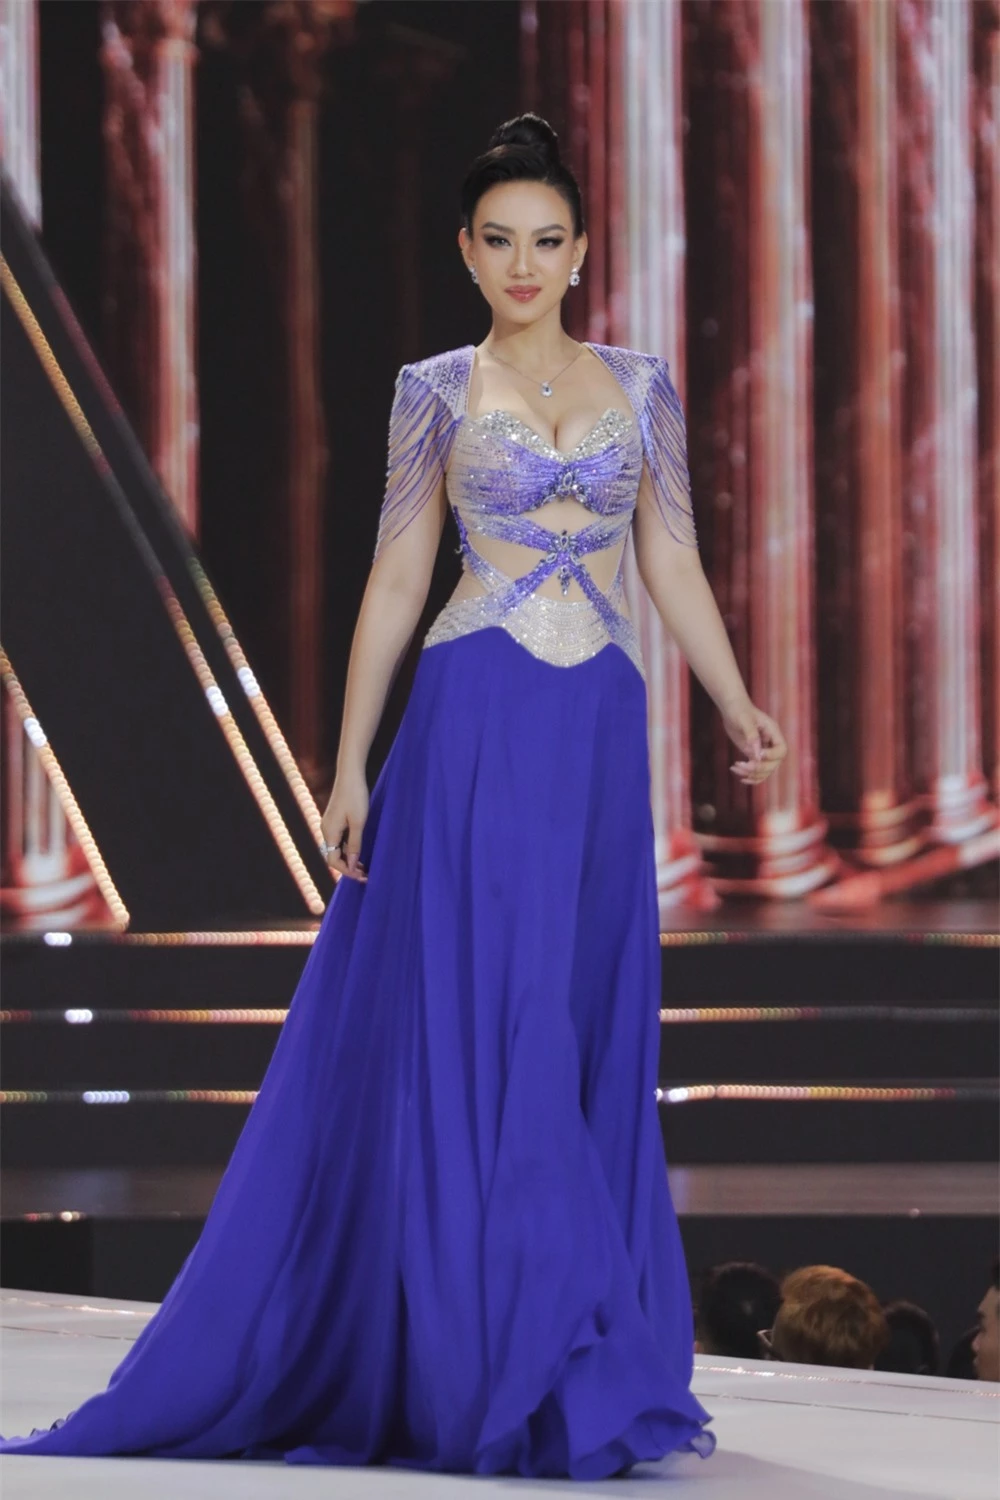 Bán kết Hoa hậu Hoàn vũ Việt Nam 2022: Loạt ứng viên cùng khoe vẻ nóng bỏng - Ảnh 21.